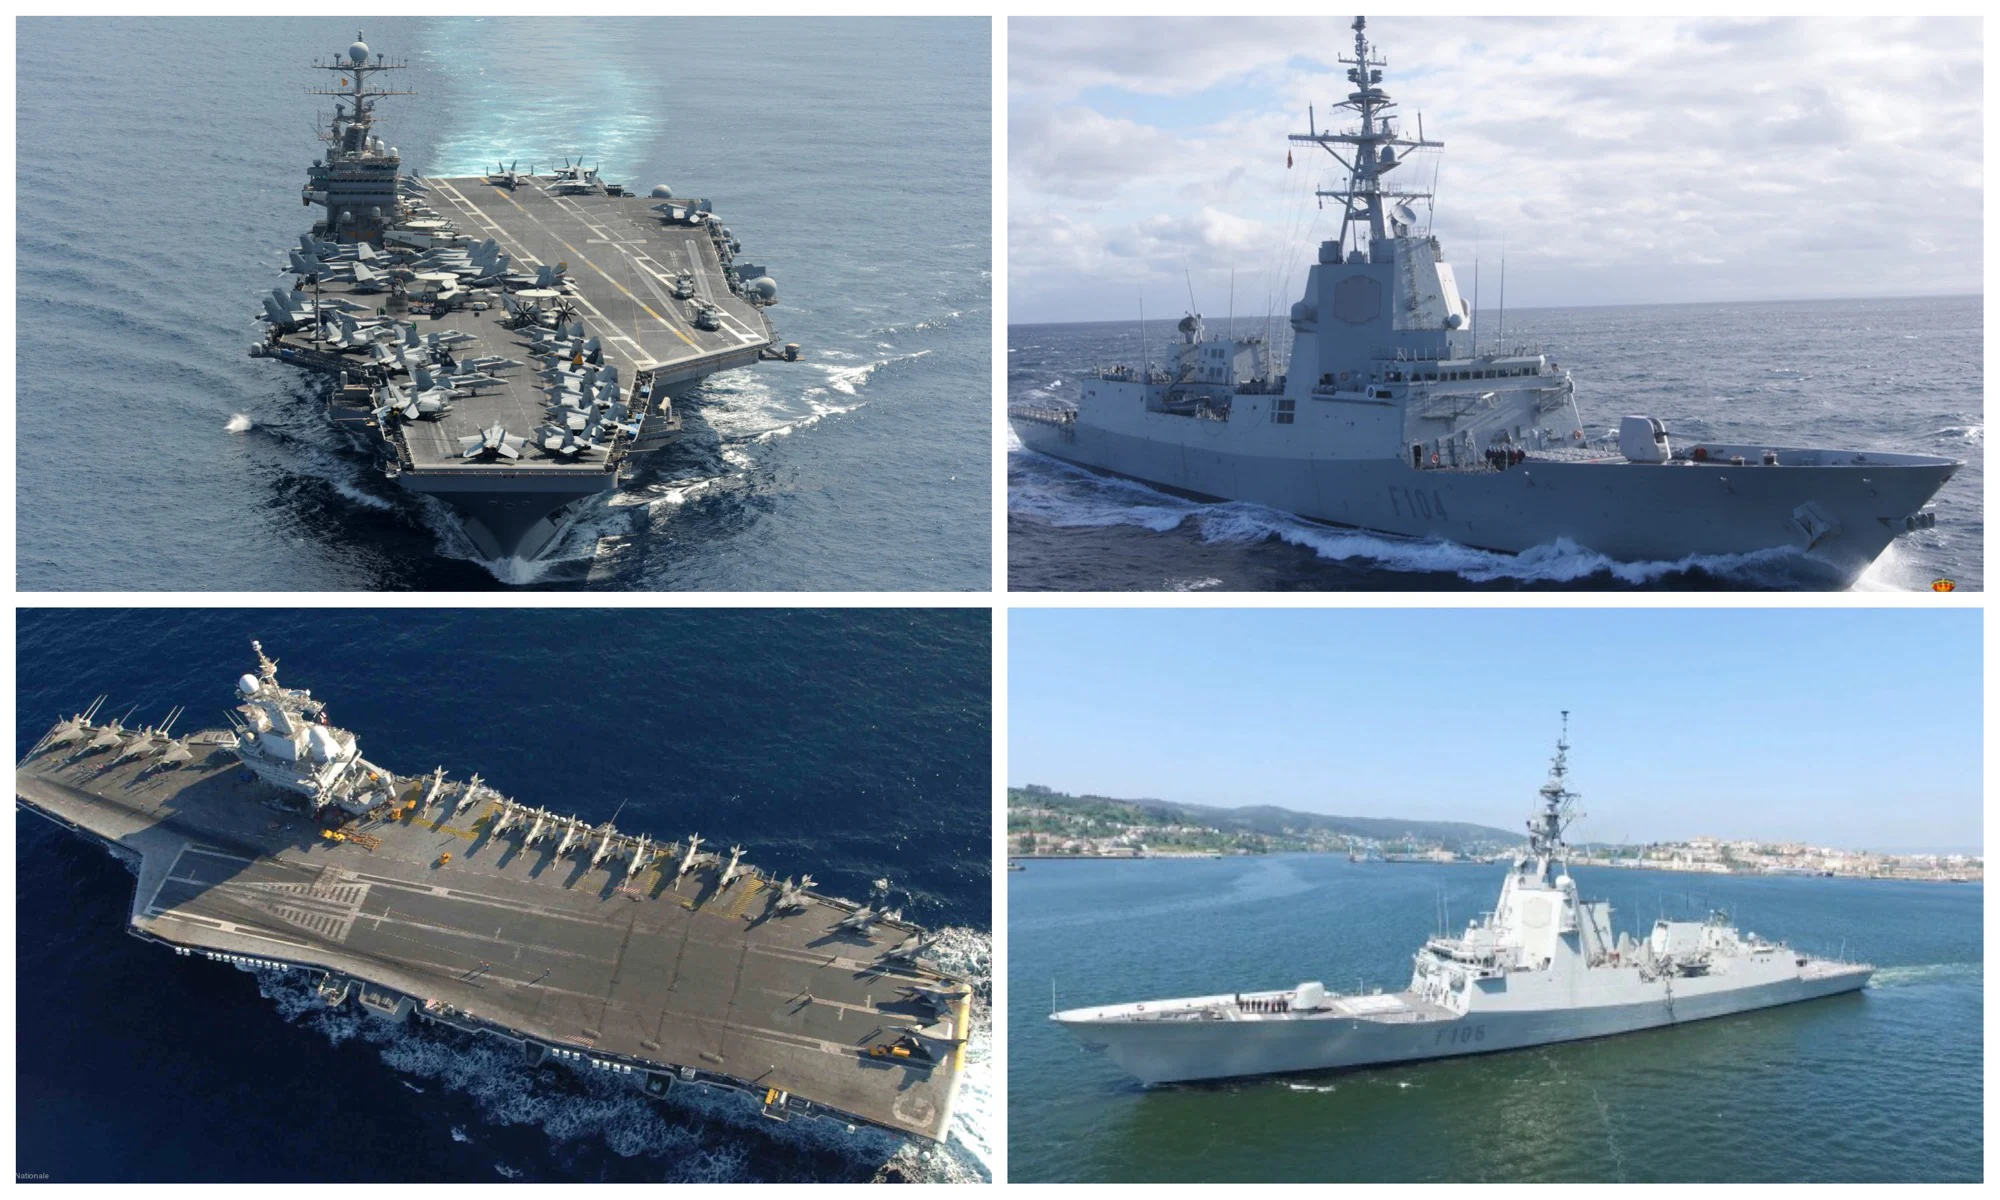 Dos fragatas españolas se integrarán con dos portaaviones de EE.UU y Francia en 2019